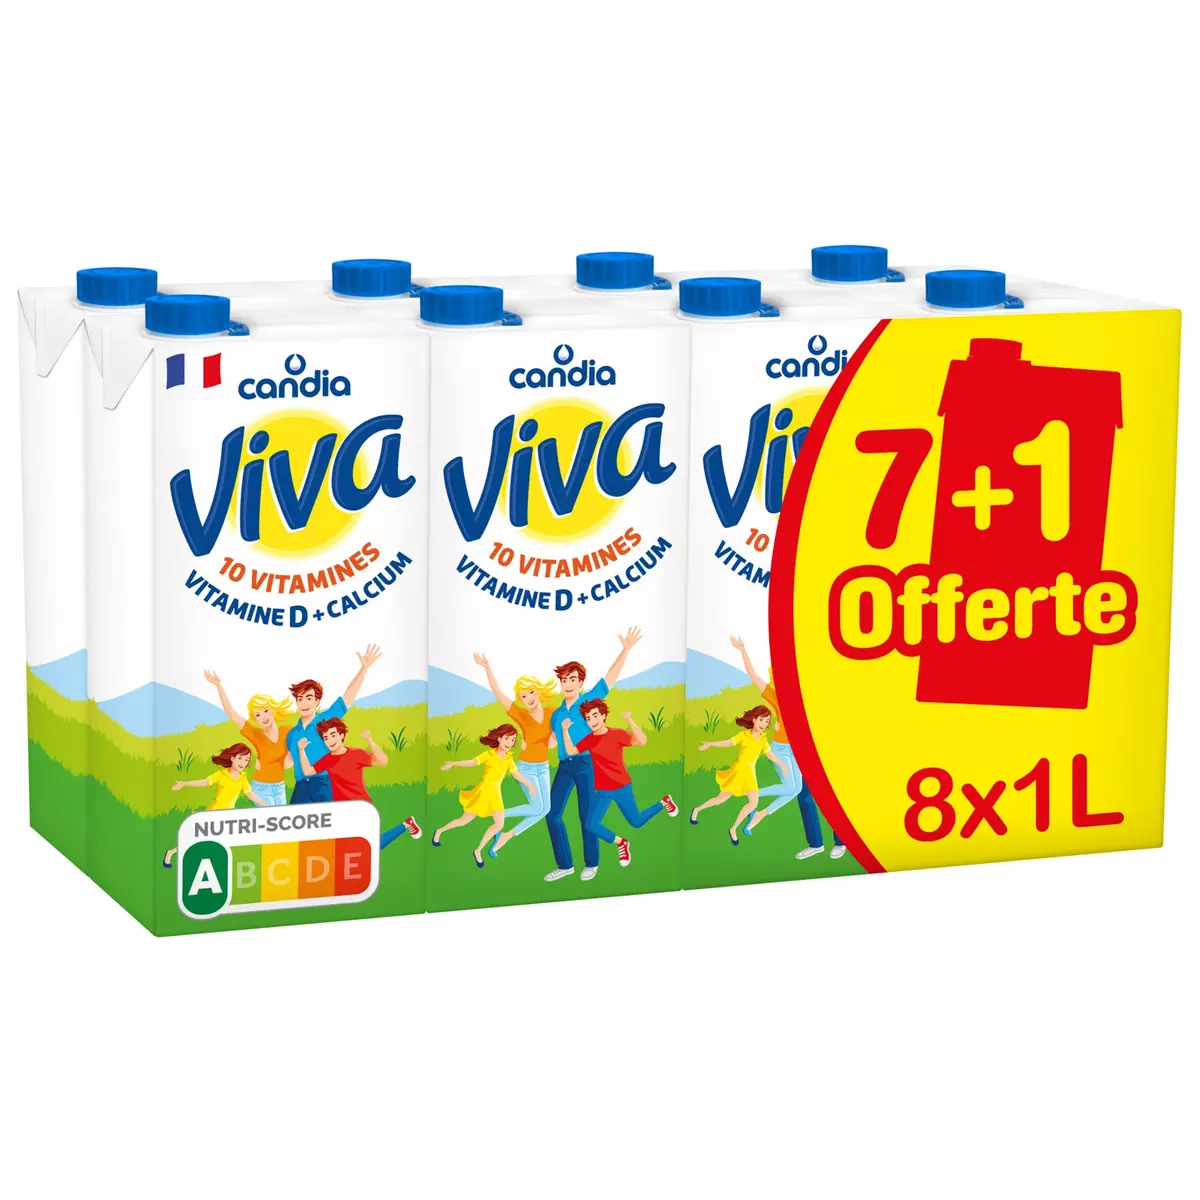 CANDIA Viva lait vitaminé UHT 7+1 brique gratuite